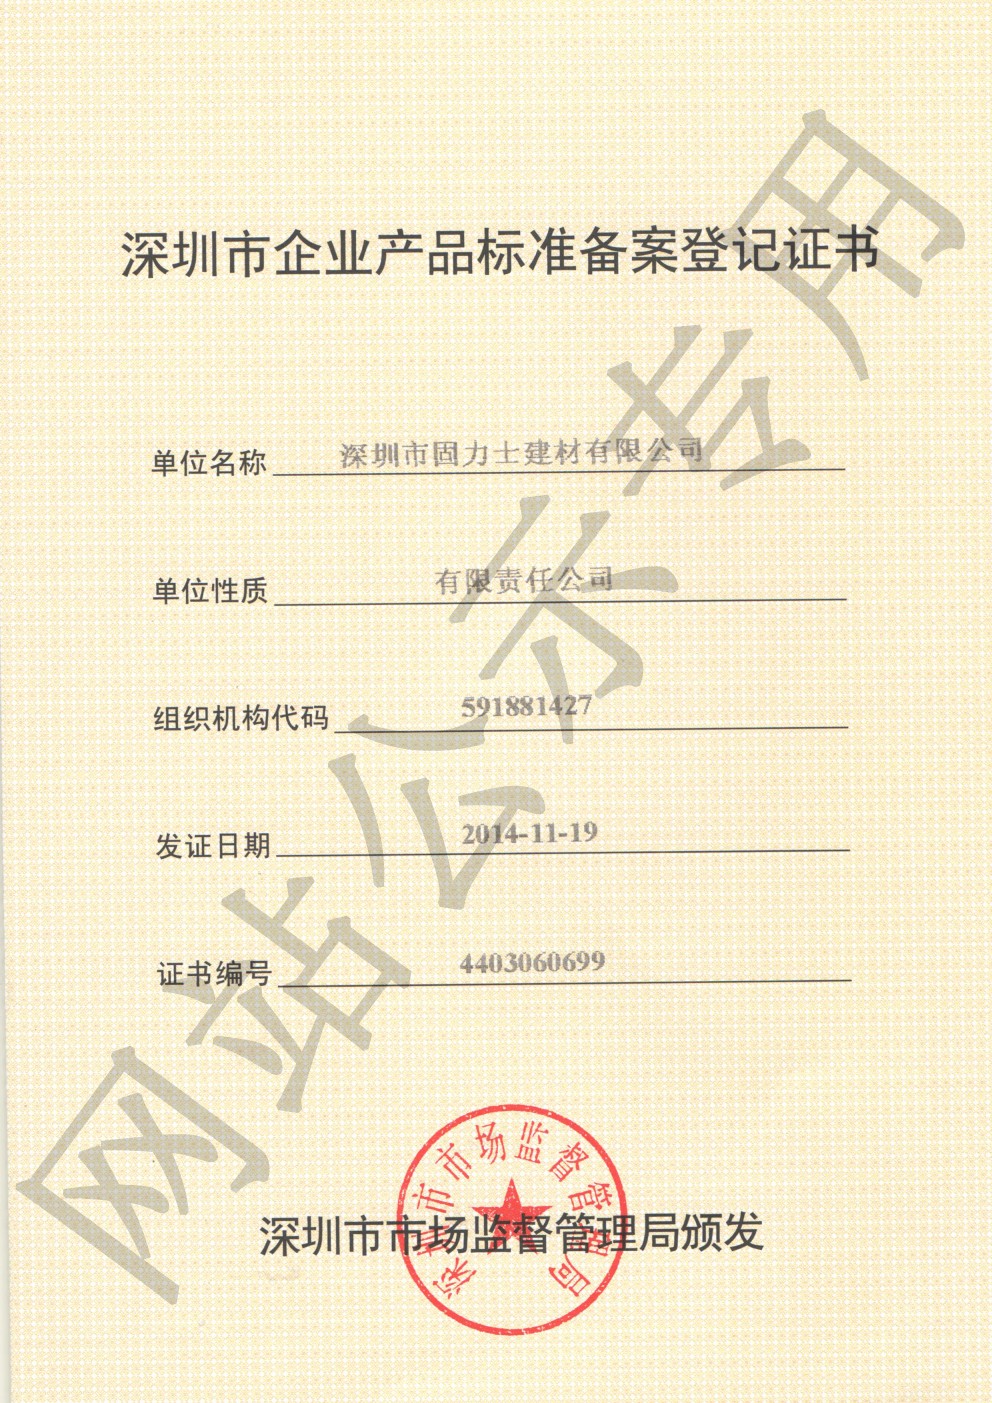 洋浦经济开发区企业产品标准登记证书